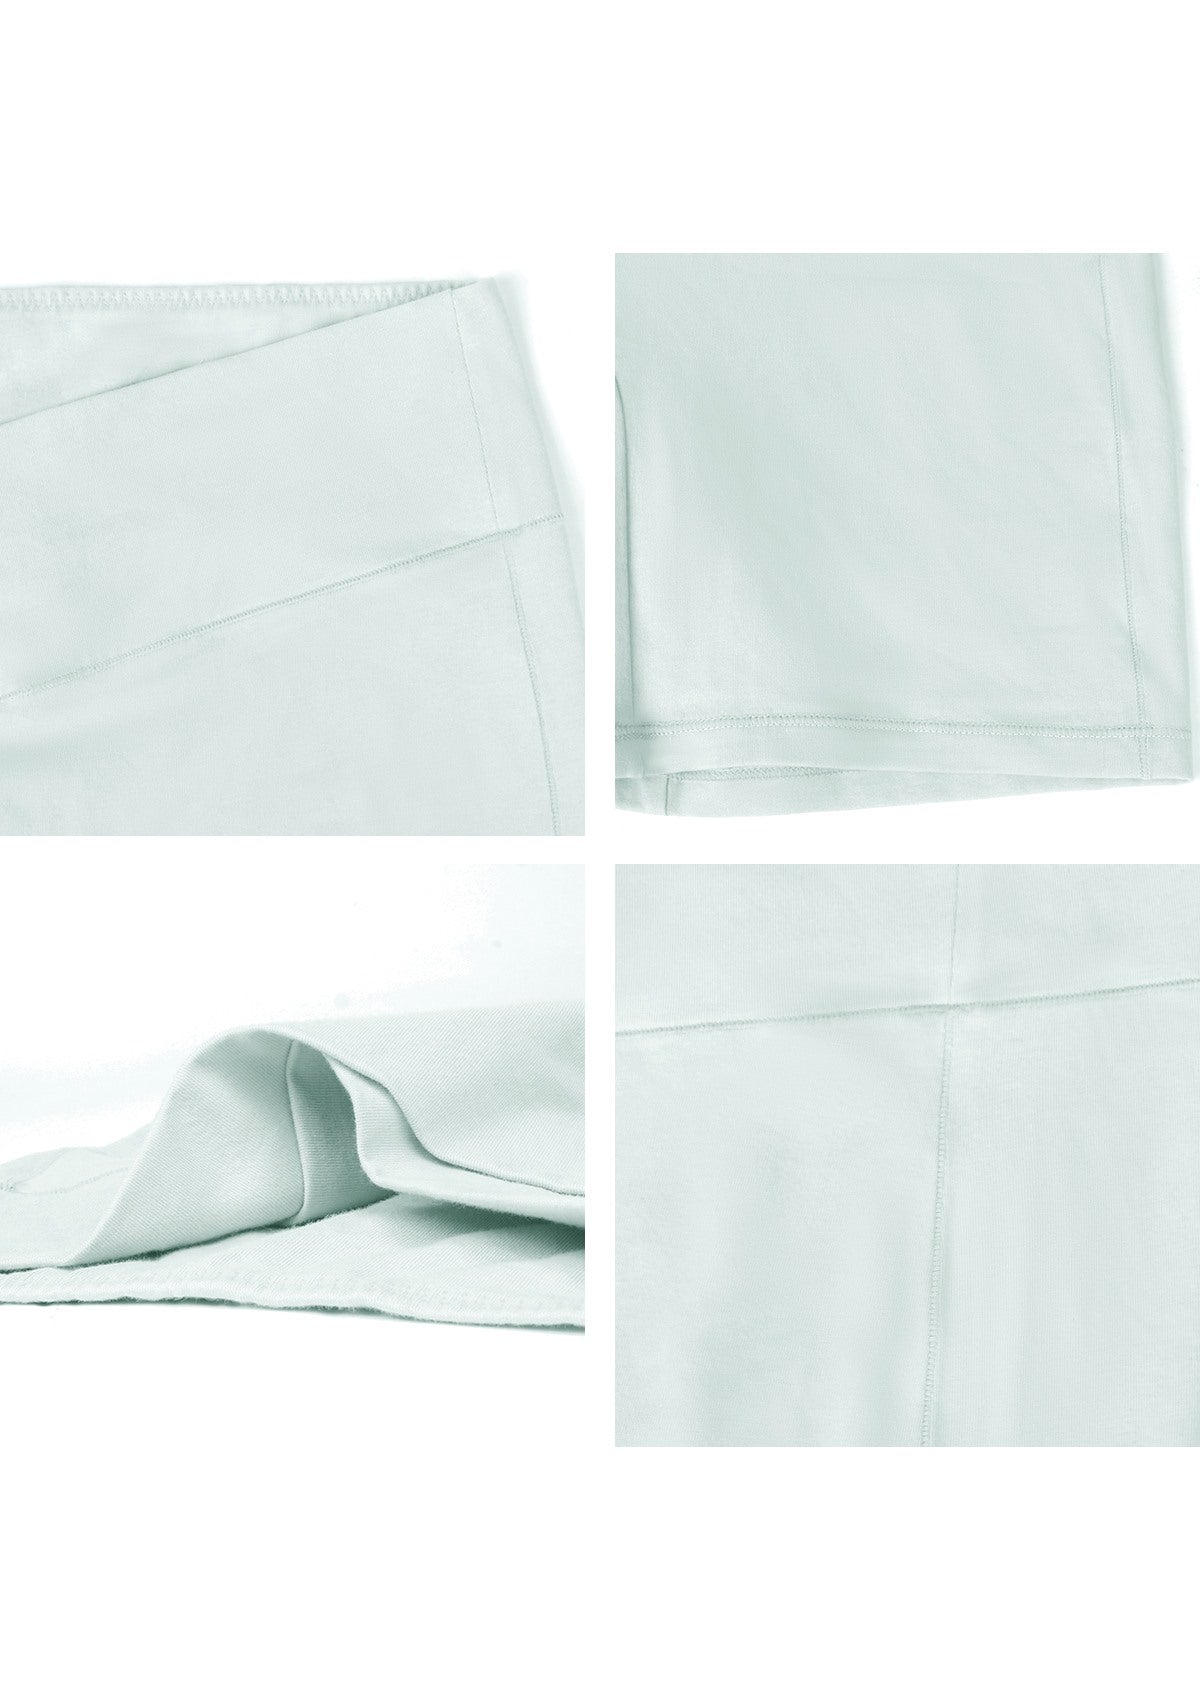 All-Day Comfort High-Rise Cotton Boyshorts Underwear 3 Pack - XXL / Black+Beige+Green